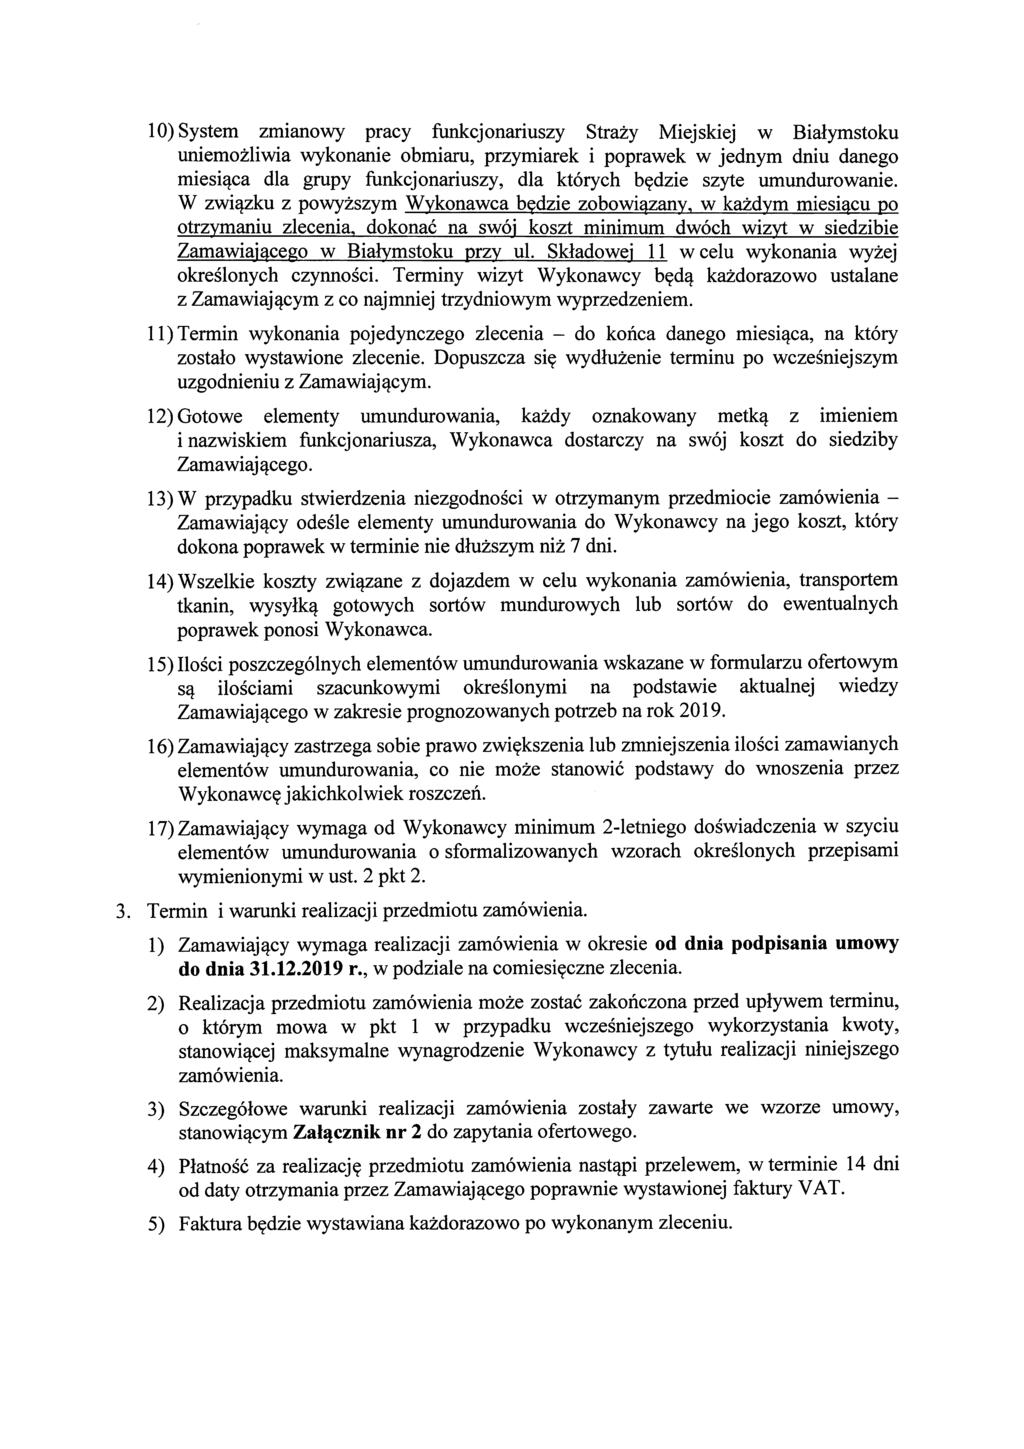 10) System zmianowy pracy funkcjonariuszy Strazy Miejskiej w Bialymstoku uniemozliwia wykonanie obmiaru, przymiarek i poprawek w jednym dniu danego miesi^ca dla grapy funkcjonariuszy, dla ktorych